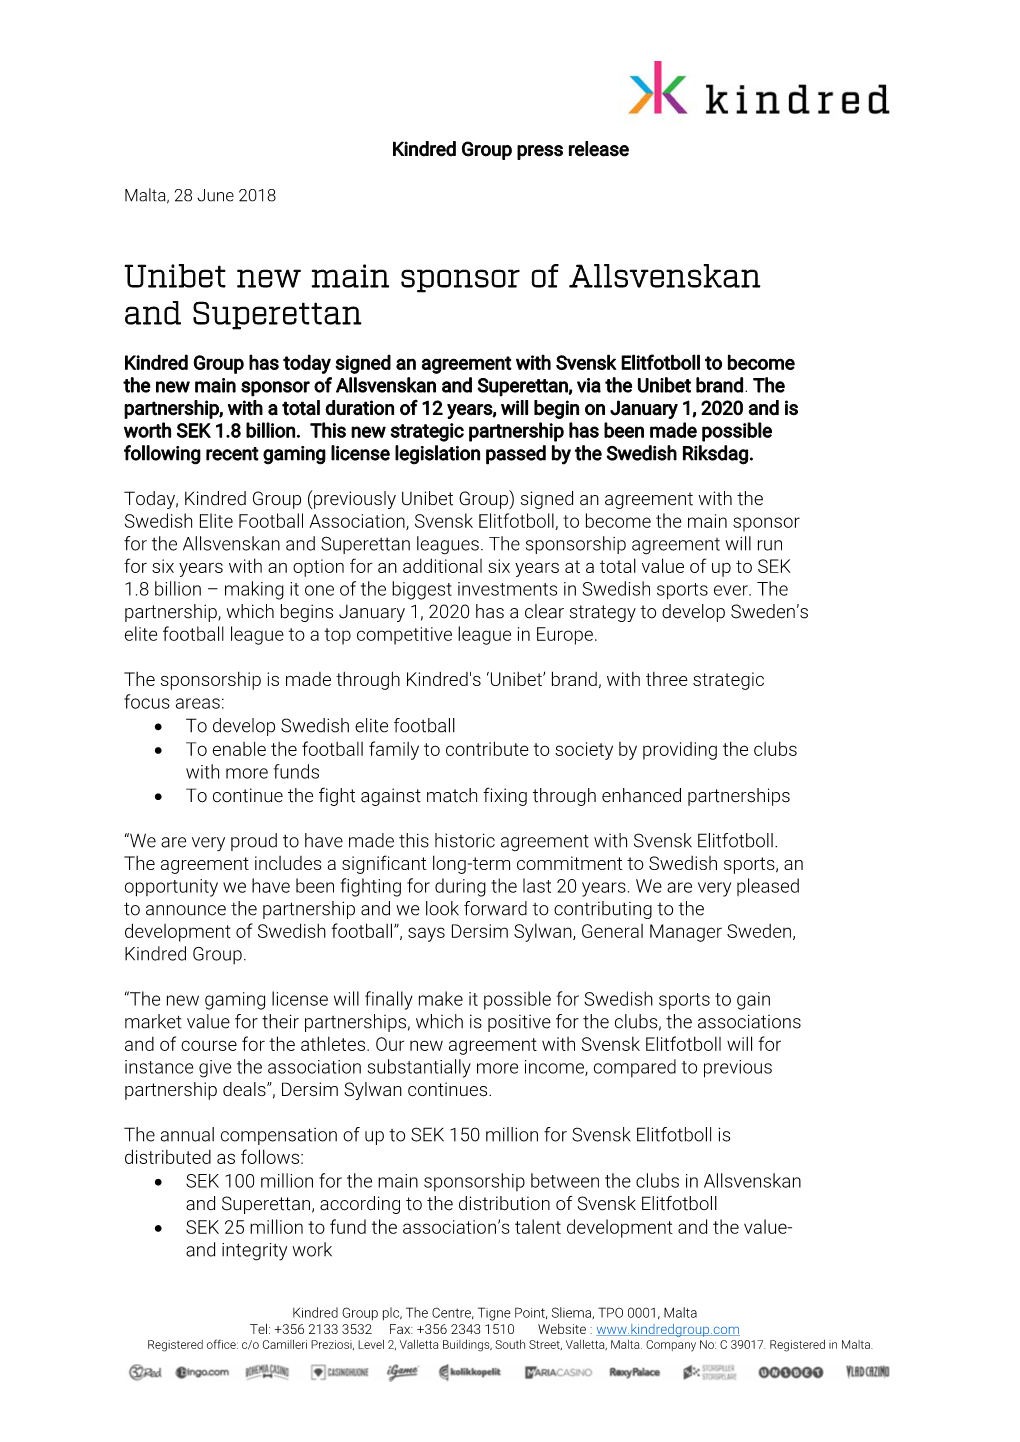 Unibet New Main Sponsor of Allsvenskan and Superettan